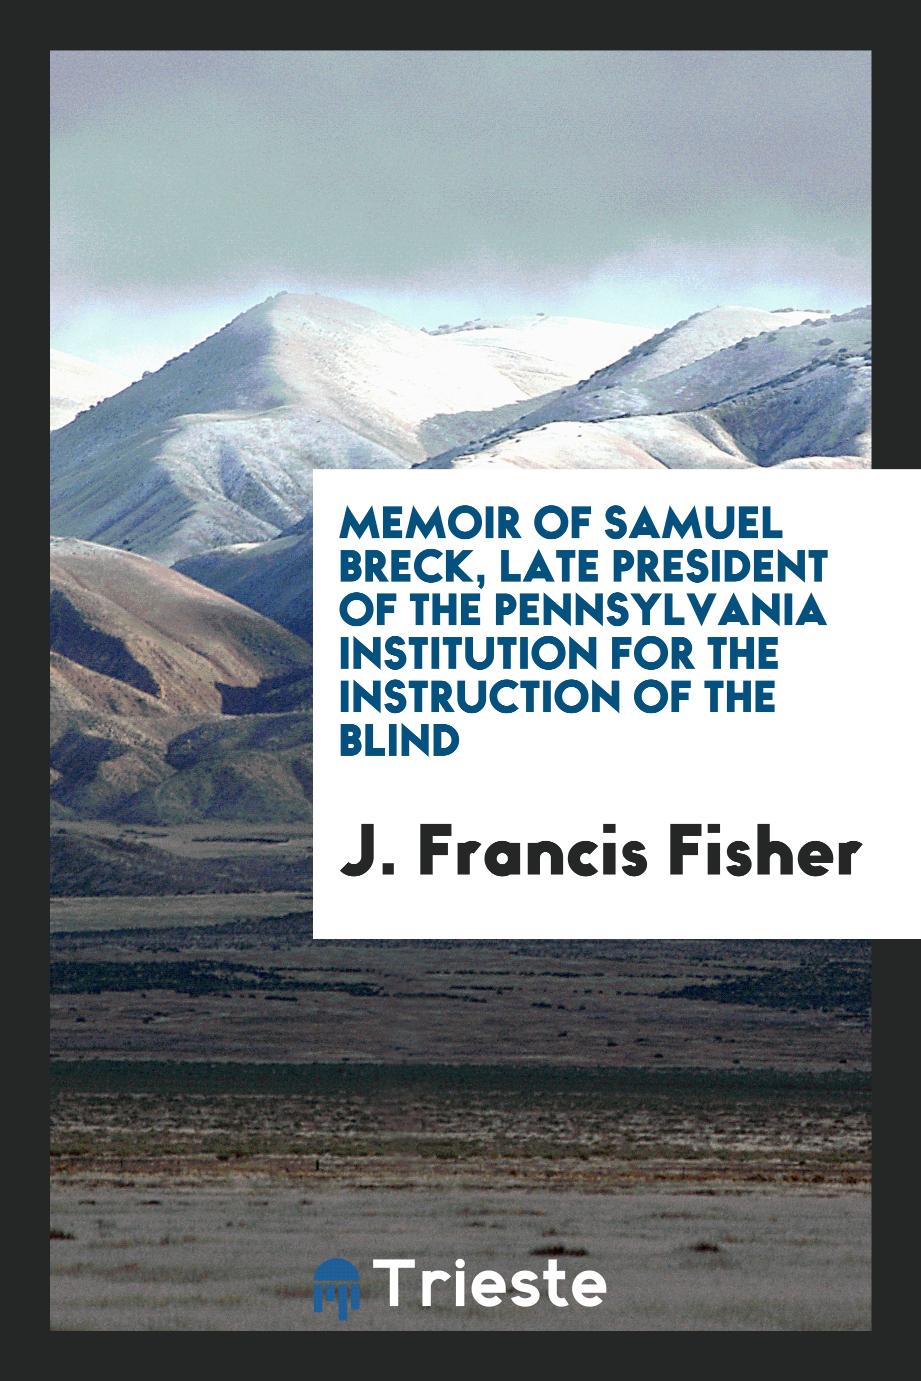 Memoir of Samuel Breck, late president of the Pennsylvania Institution for the Instruction of the Blind